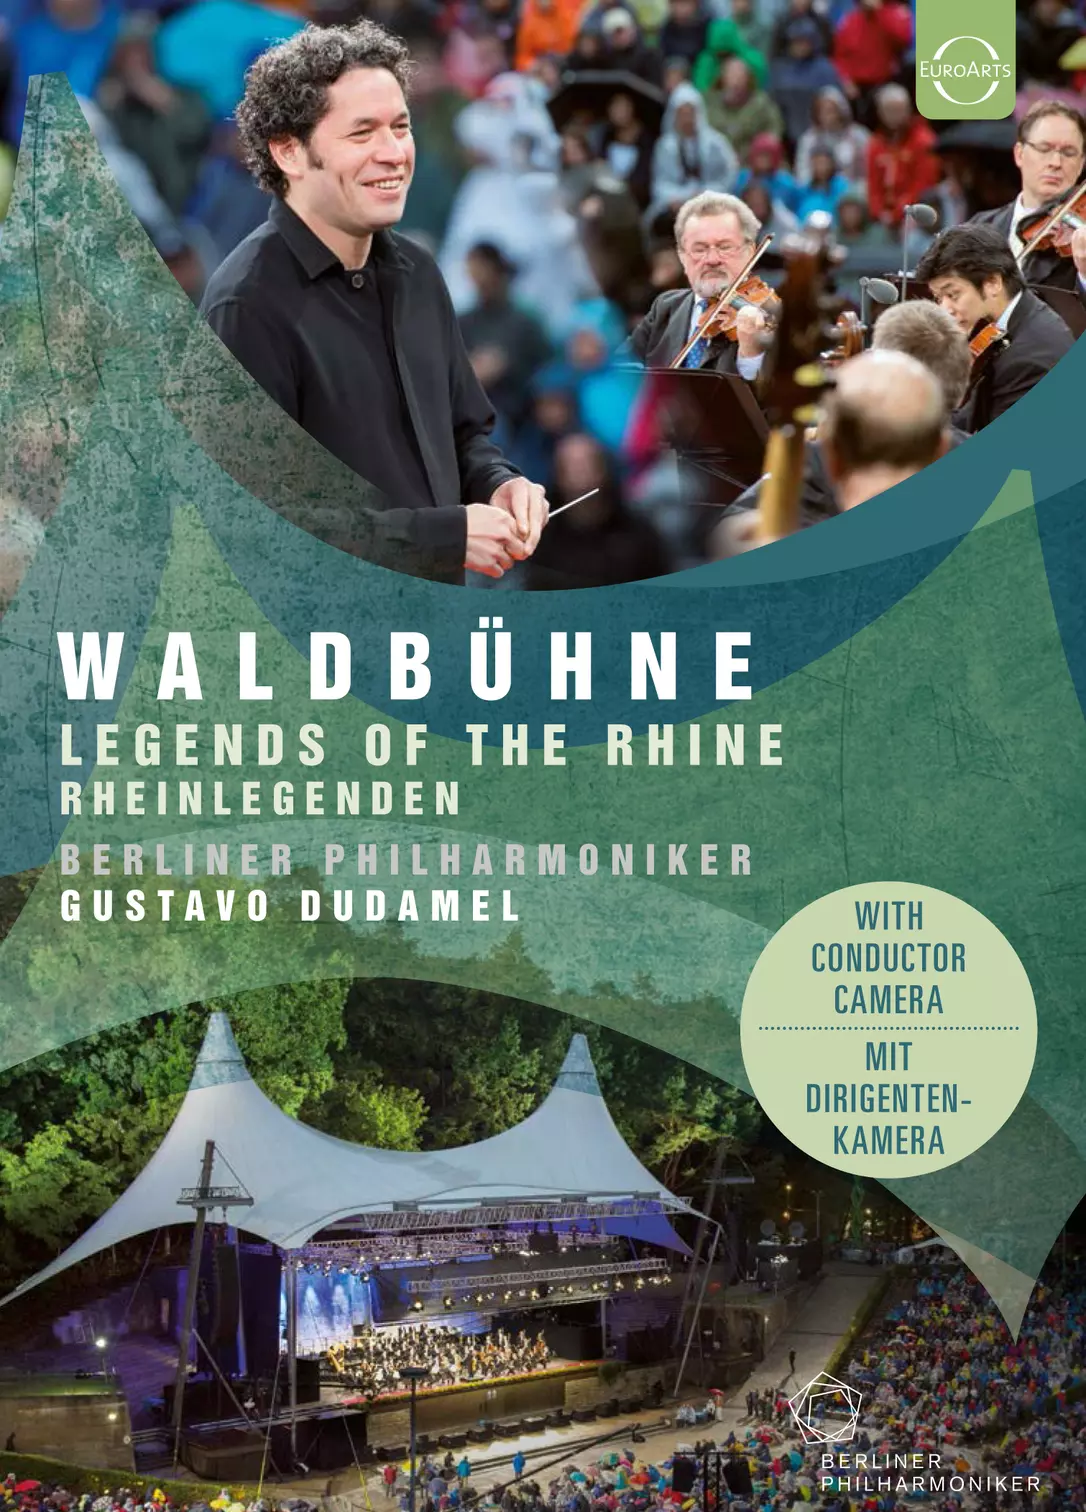 Berliner Philharmoniker - Waldbuehne 2017 | Warner Classics